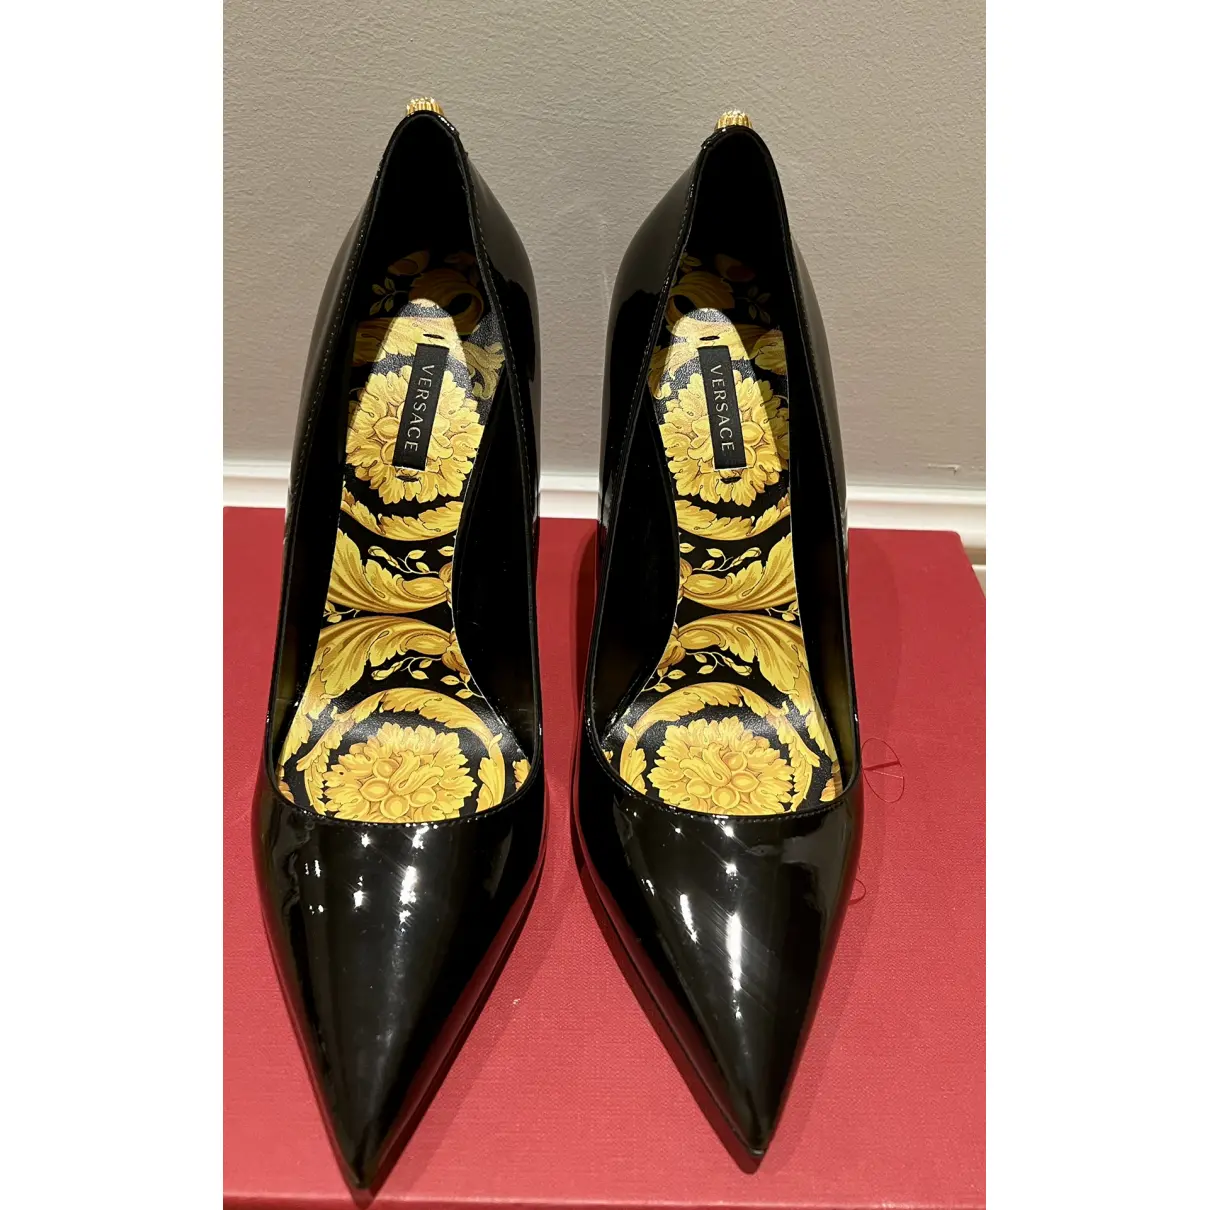 Buy Versace Patent leather heels online